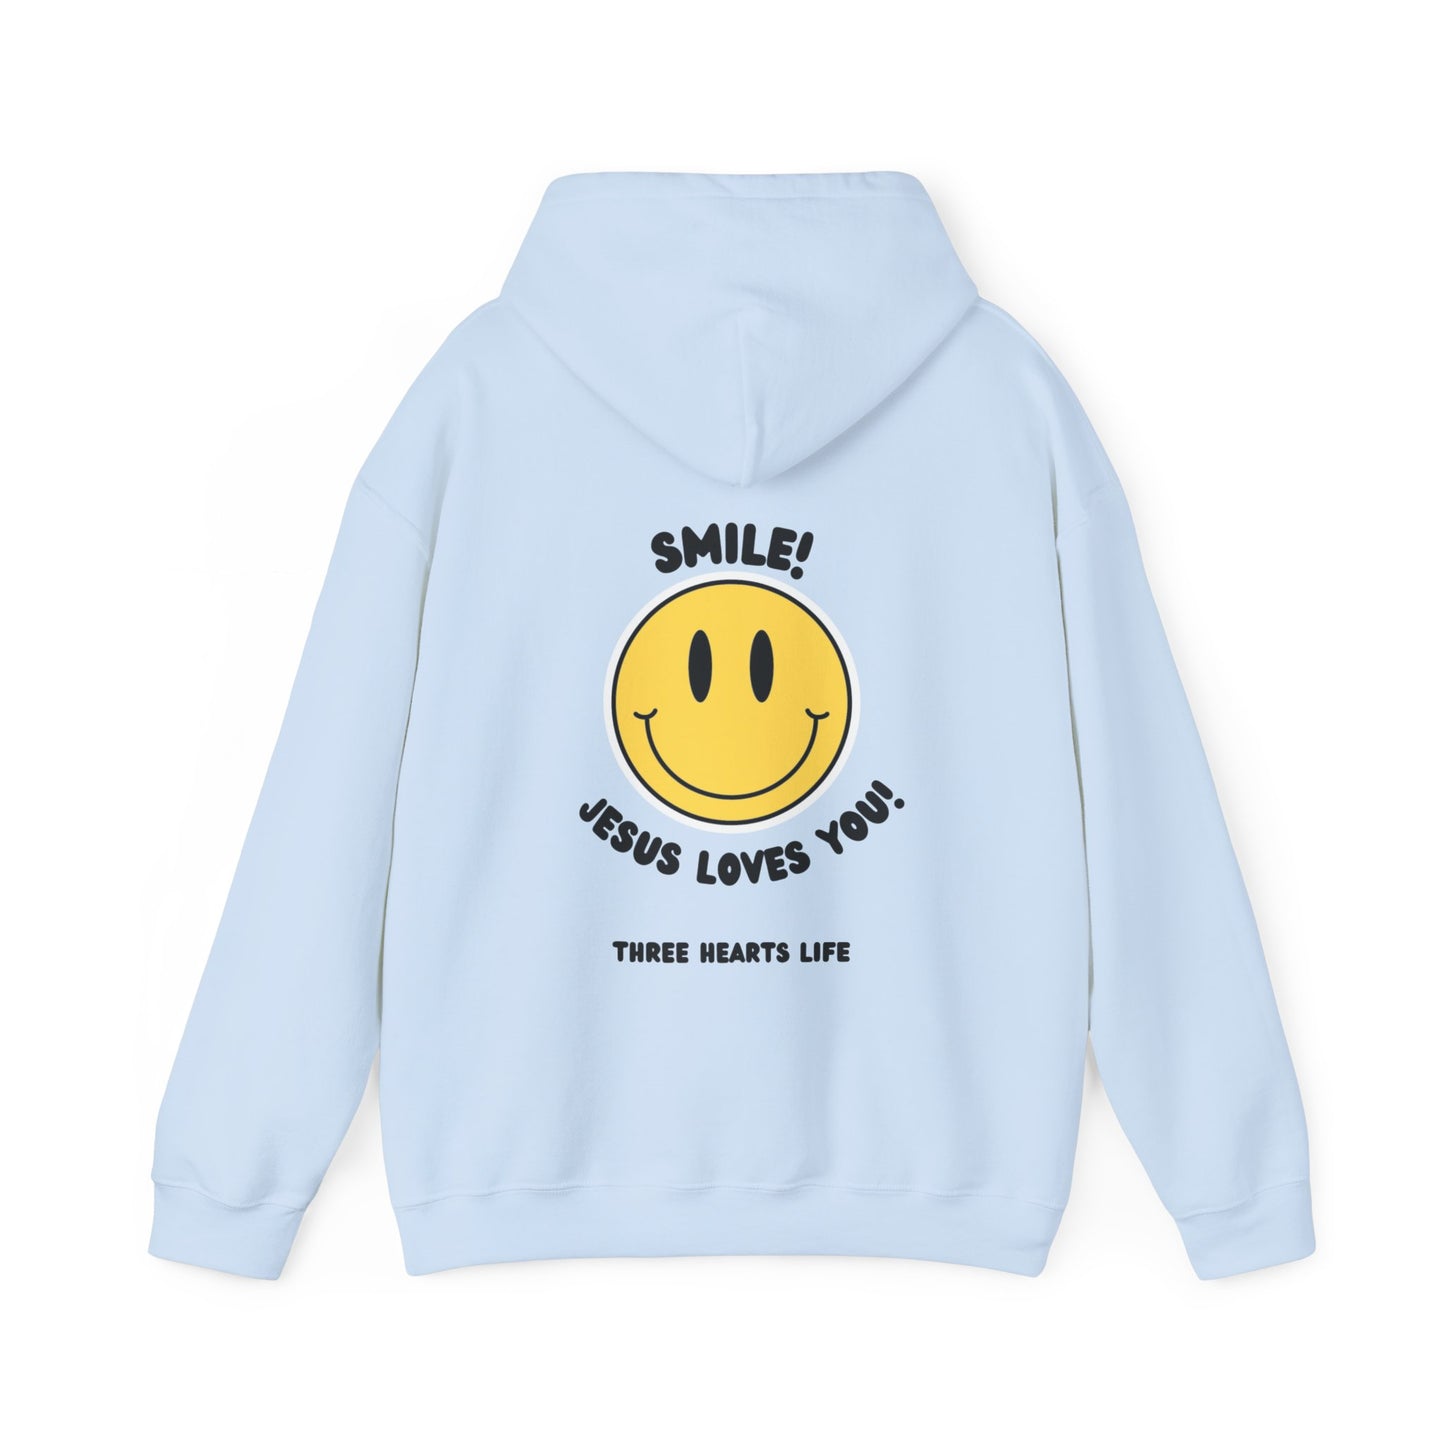 Smile! Jesus Loves You Hooded Sweatshirt